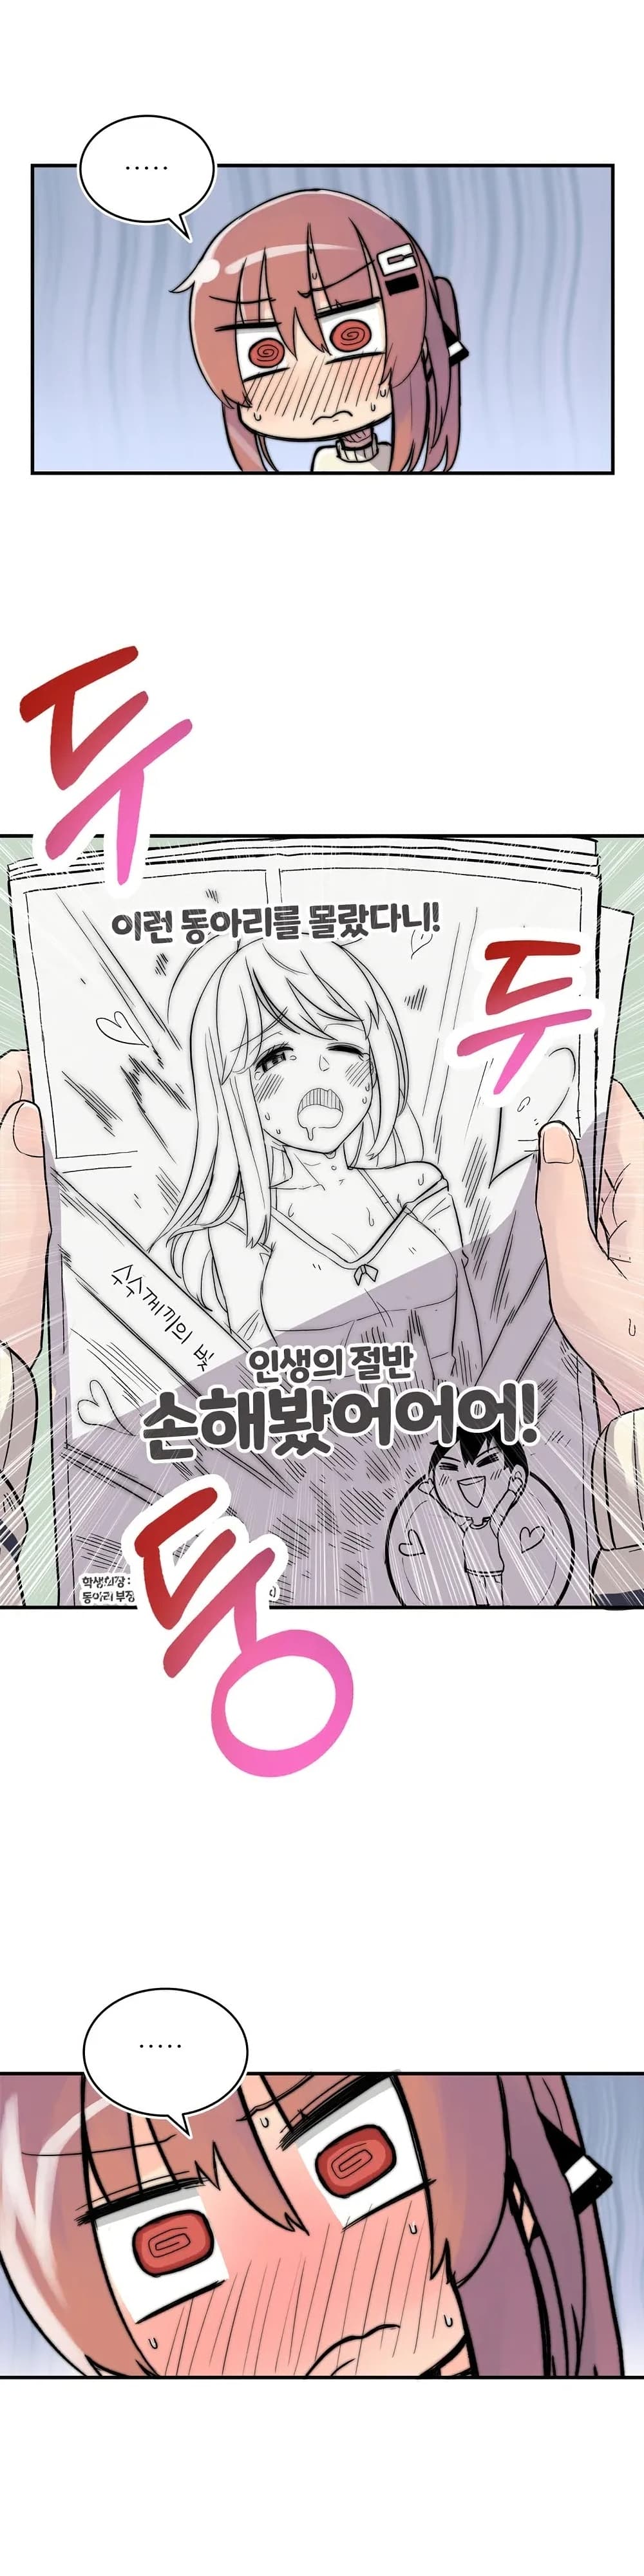 Erotic Manga Club ชมรมการ์ตูนอีโรติก 3-3